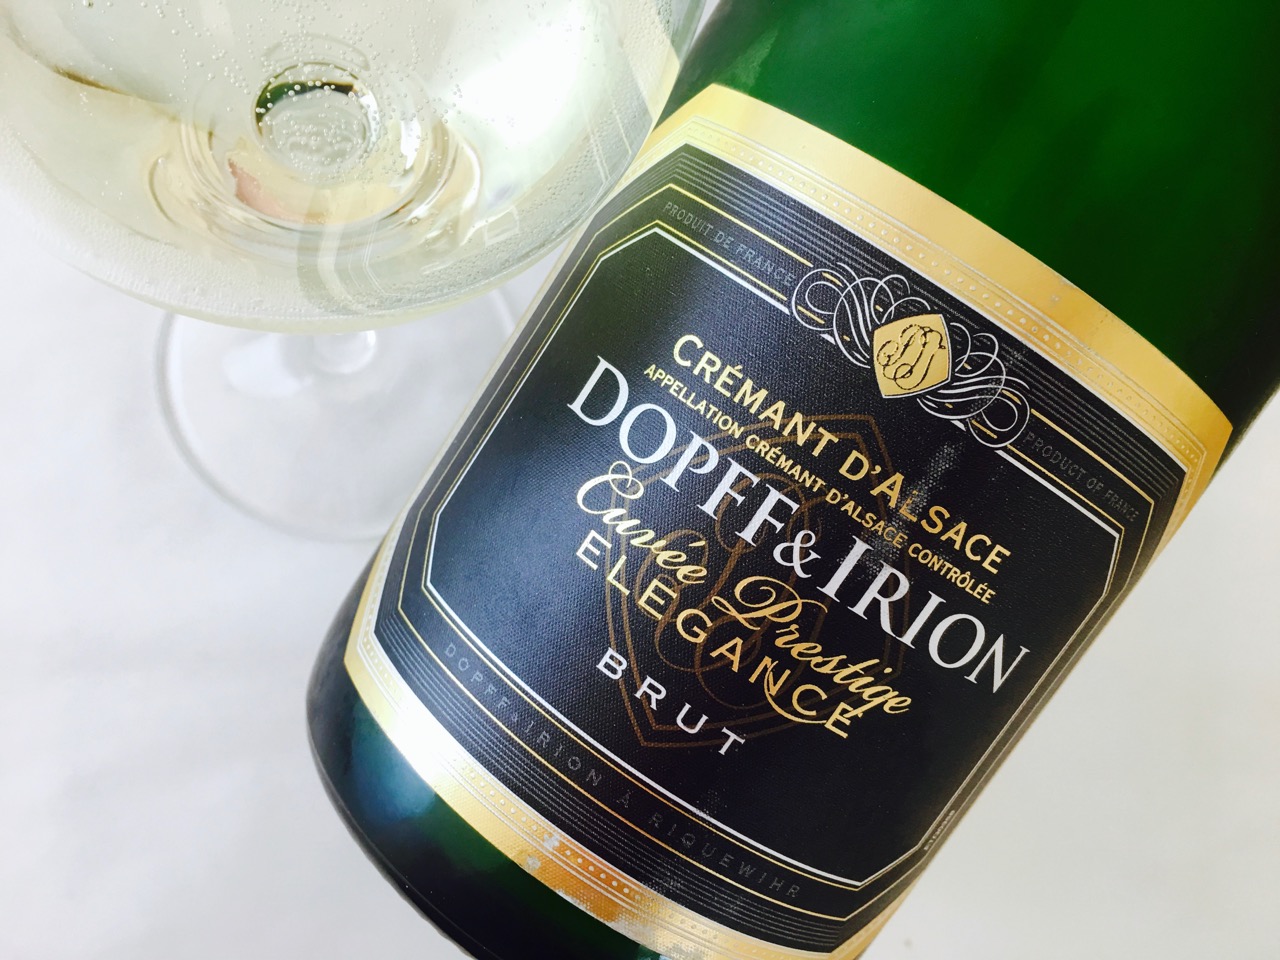 NV Dopff & Irion Cuvée Prestige Elegance Brut Crémant d'Alsace